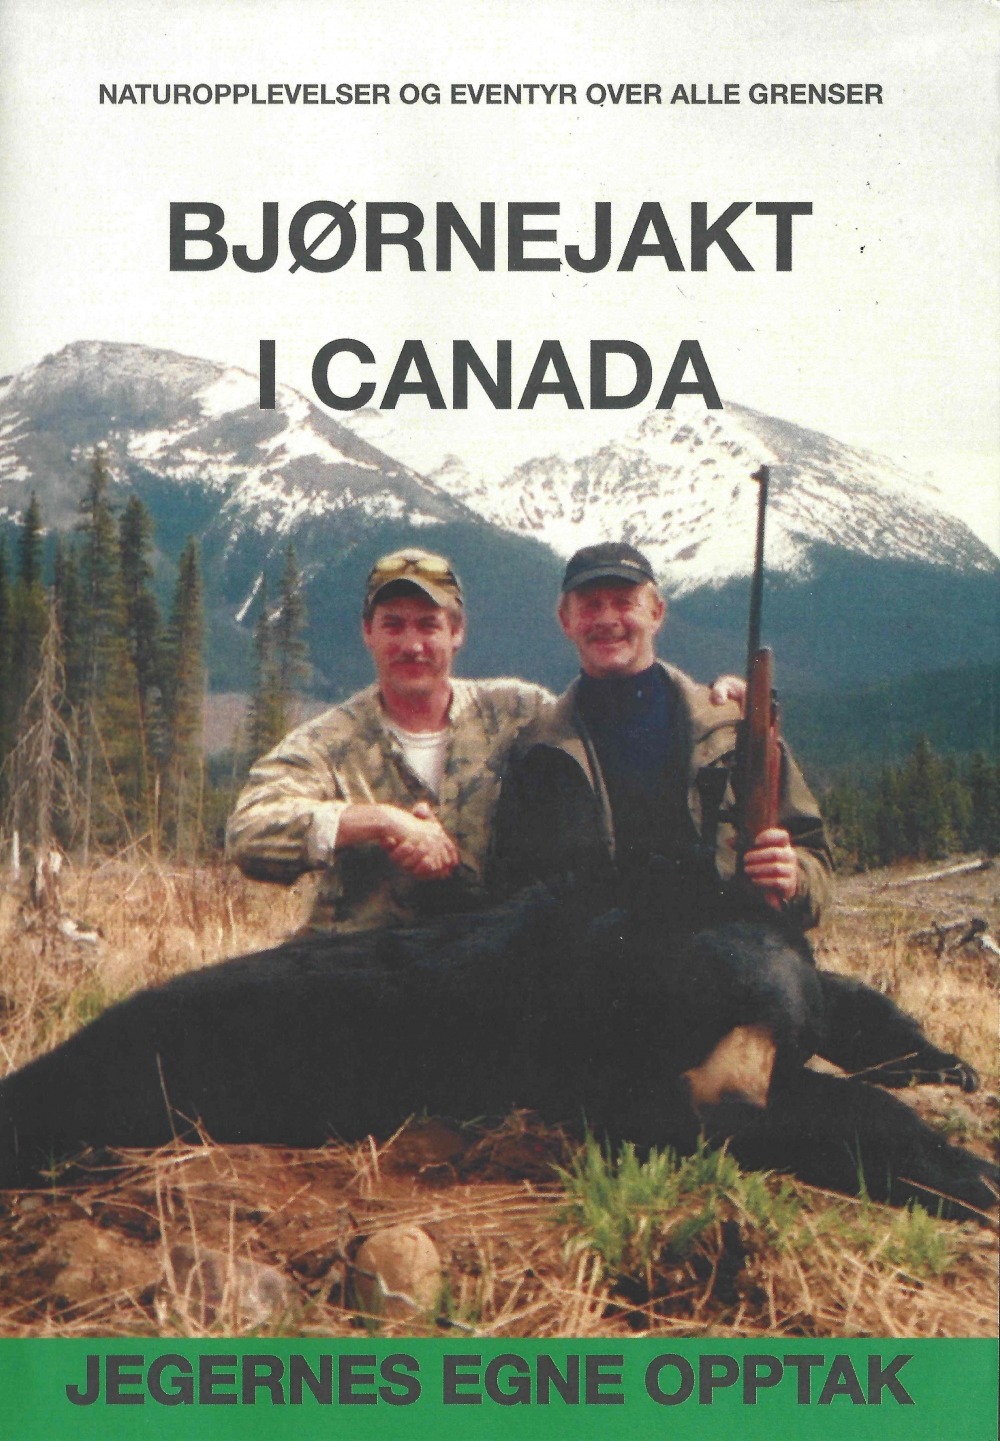 Nostalgifilm fra bjørnejakter i Canada.